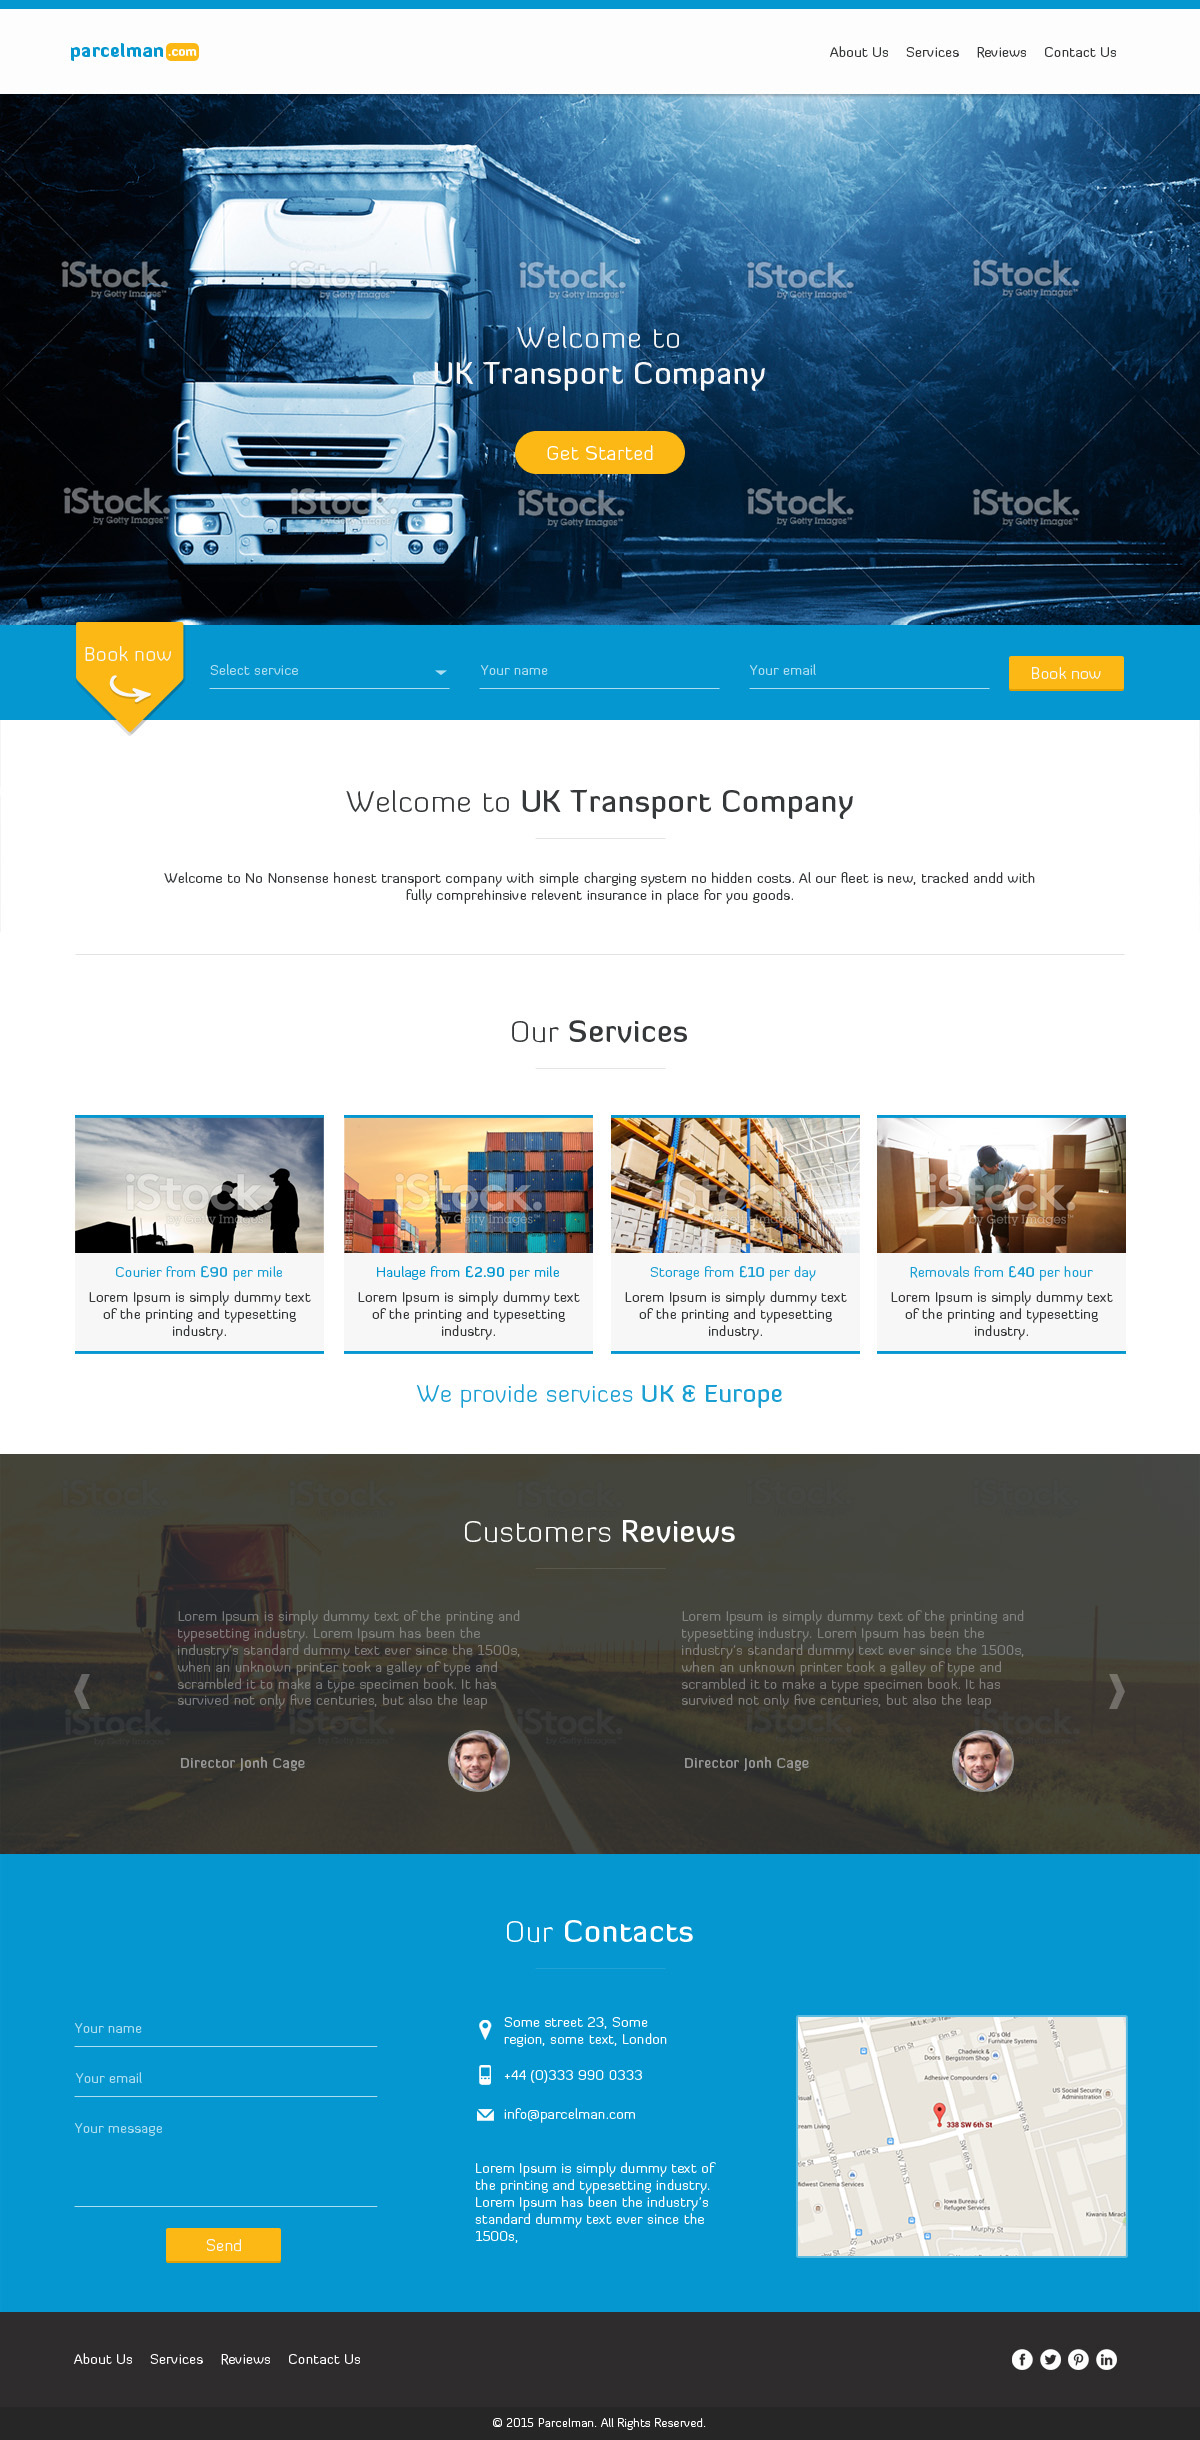 #delivery #ship #truck #deliverydesign